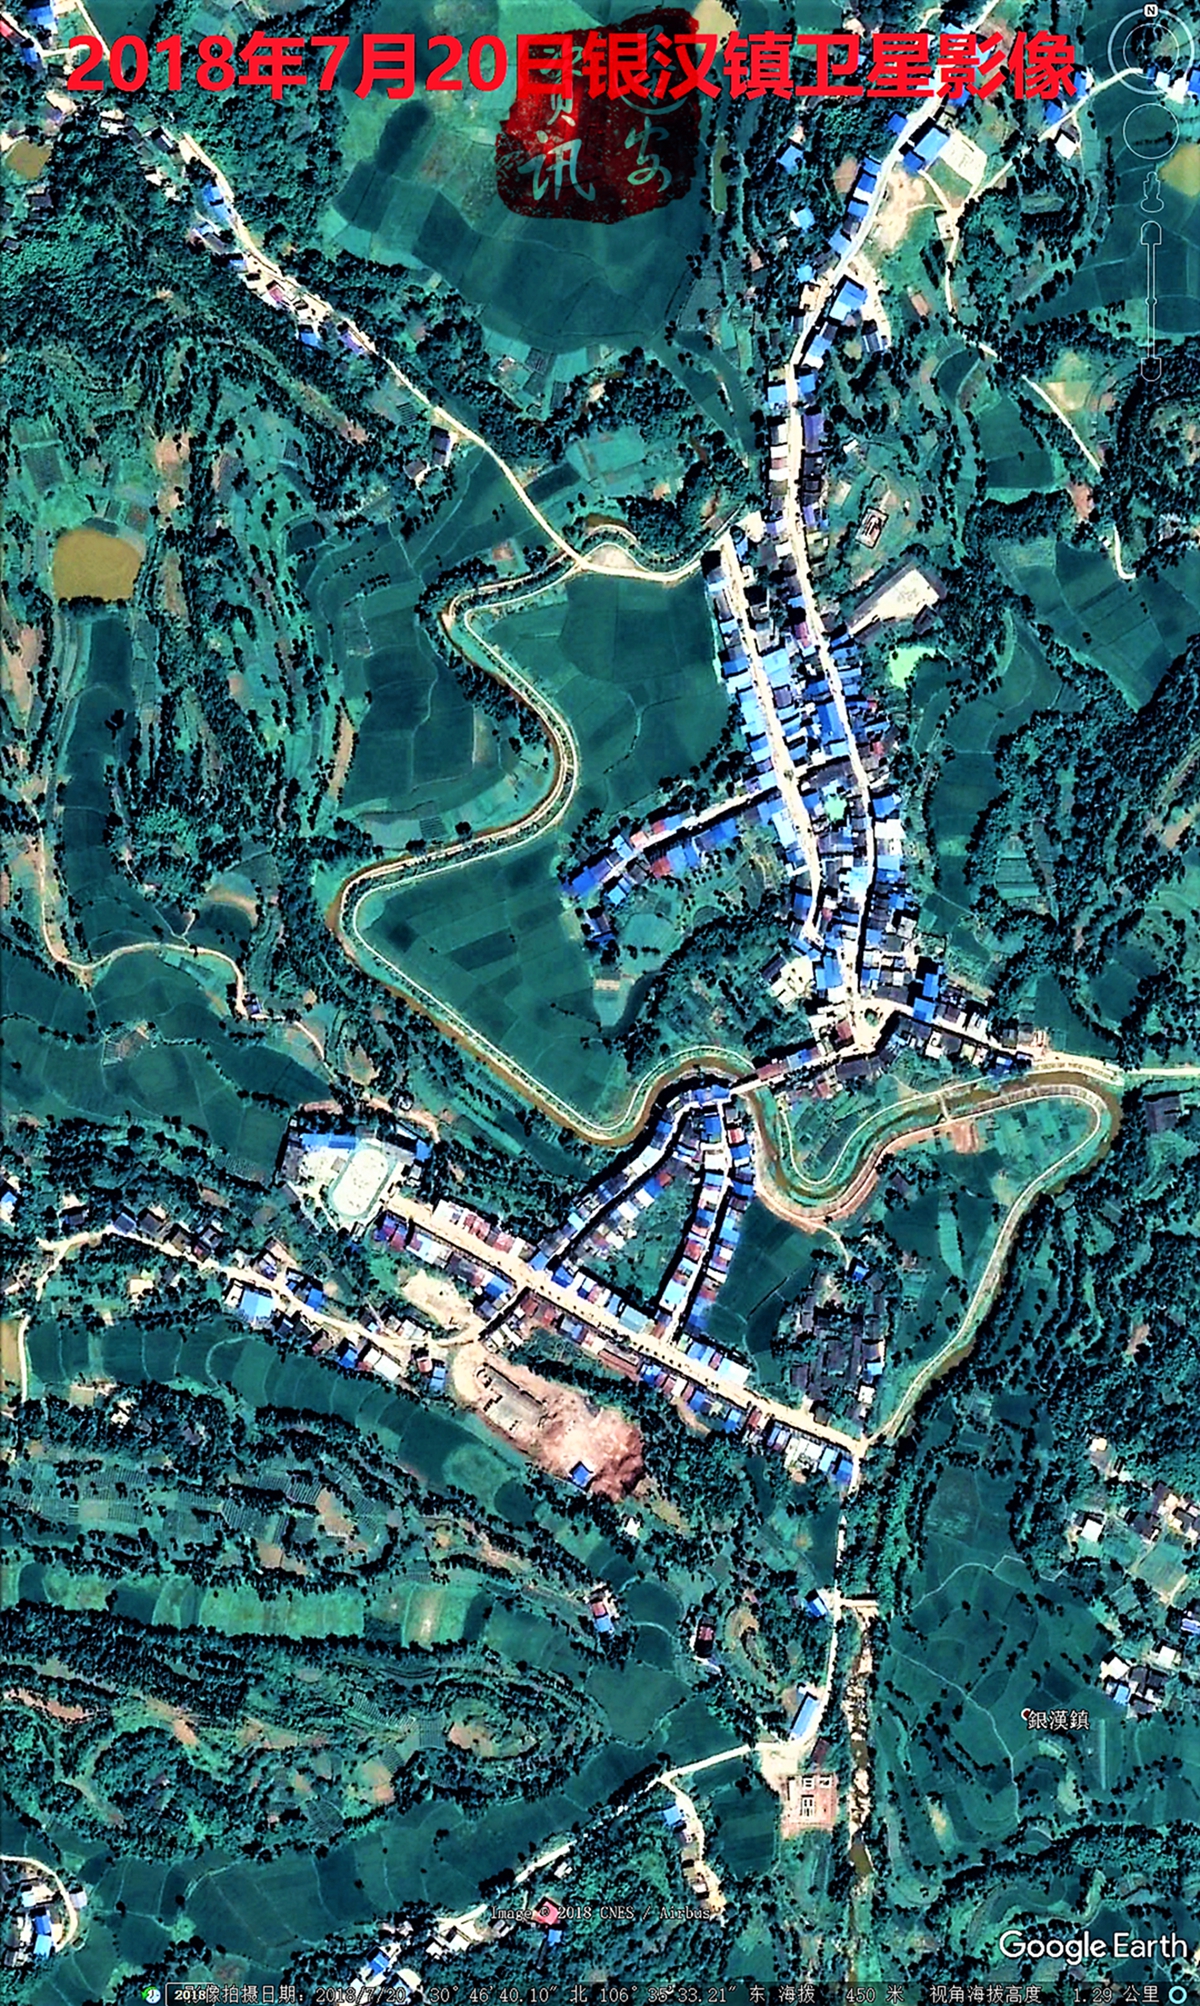 2018年7月20日蓬安南部14乡镇最新卫星照片